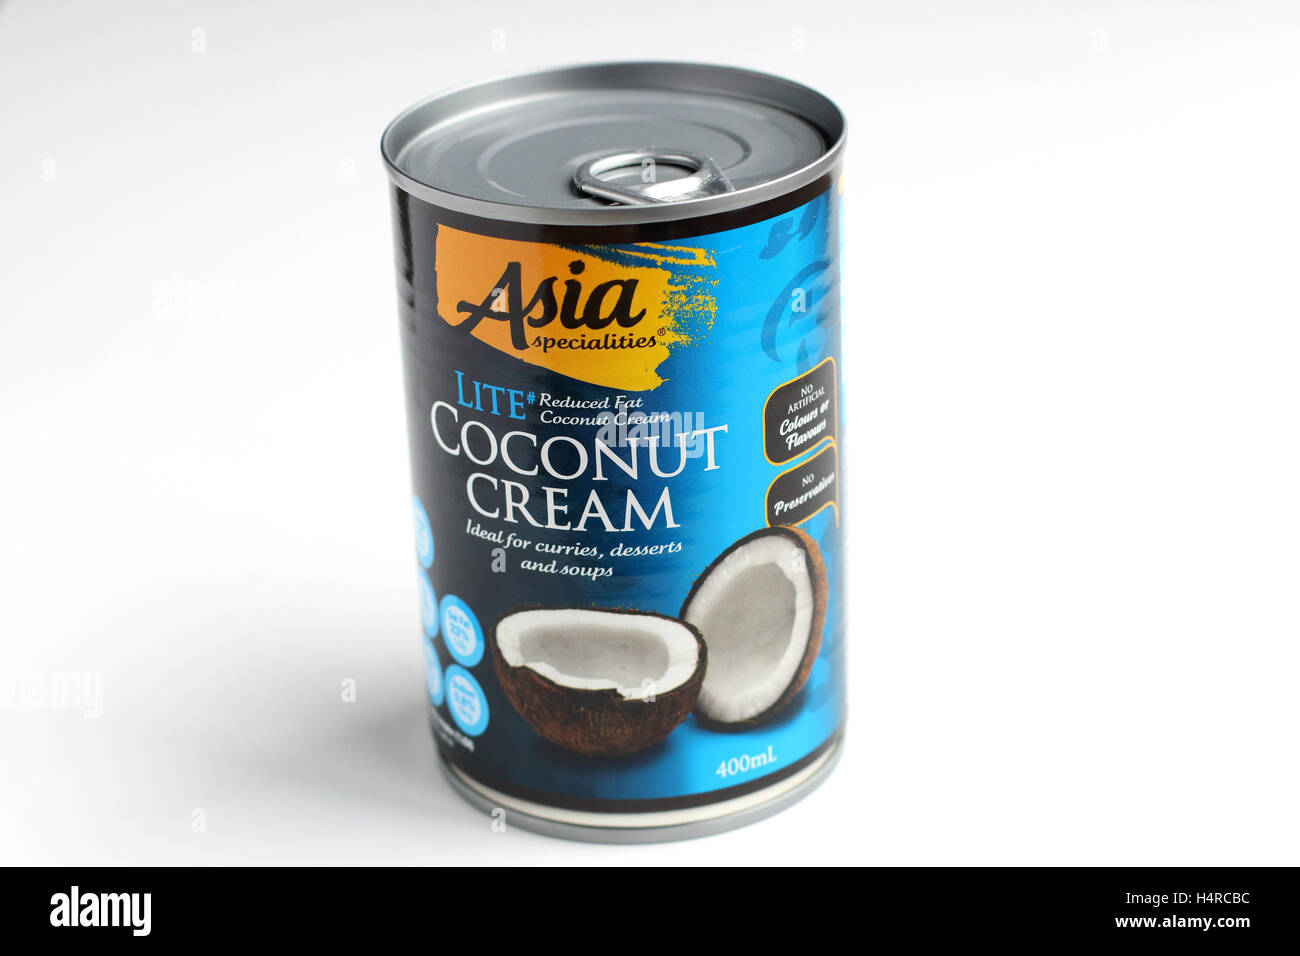 Aldi Australien Asien Spezialitäten Kokosmilch in der Dose vor weißem  Hintergrund Stockfotografie - Alamy